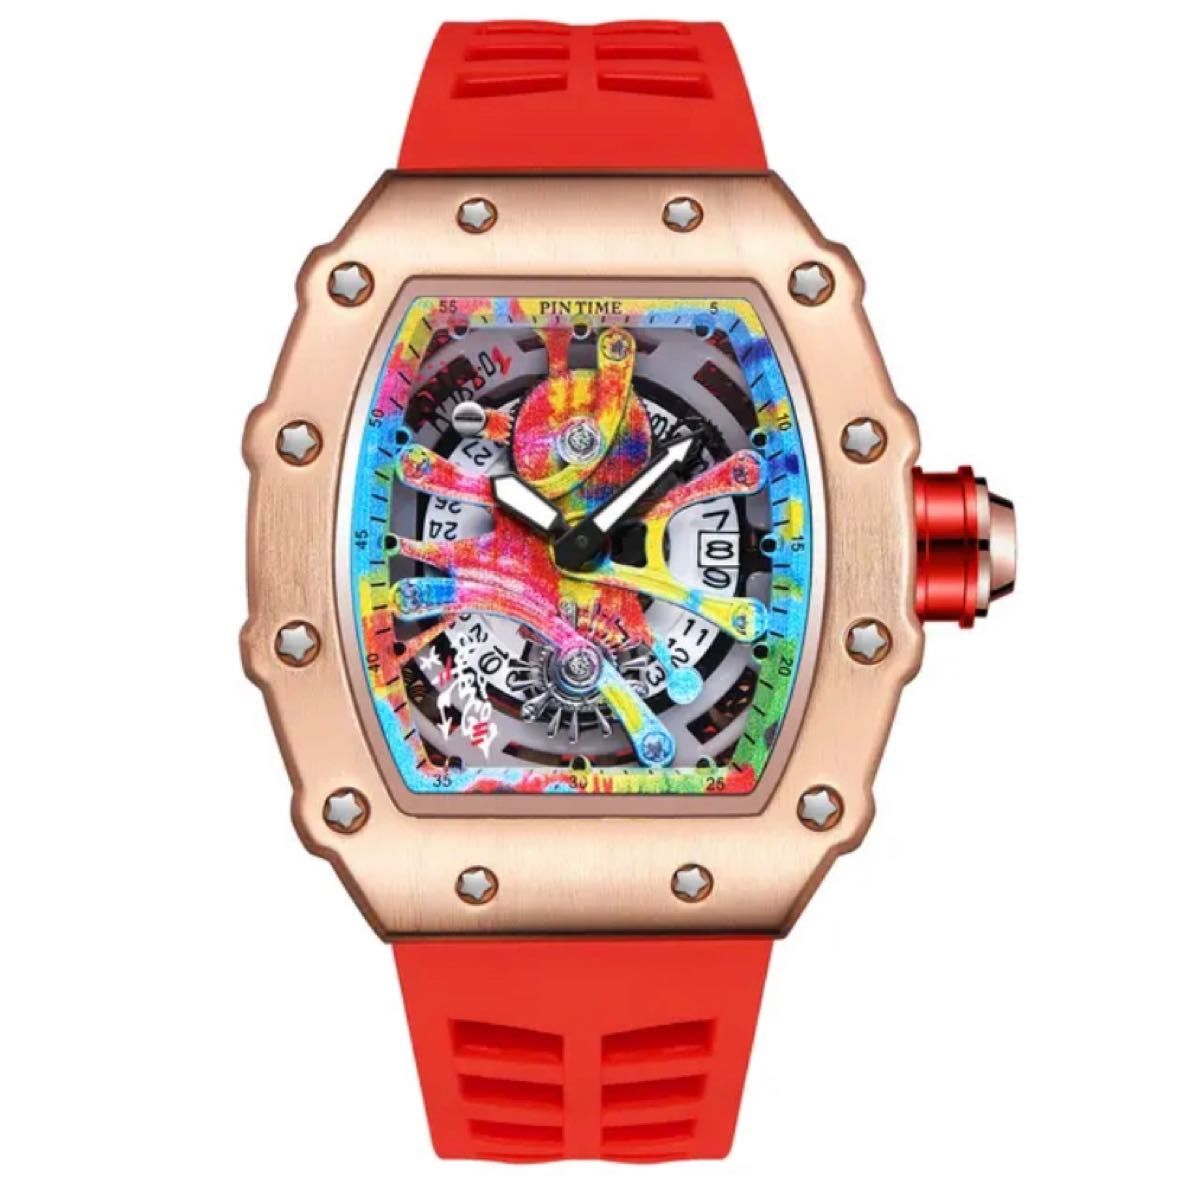 【日本未発売 アメリカ価格20,000円】PINTIME トゥールビヨンオマージュ メンズ腕時計 高級腕時計